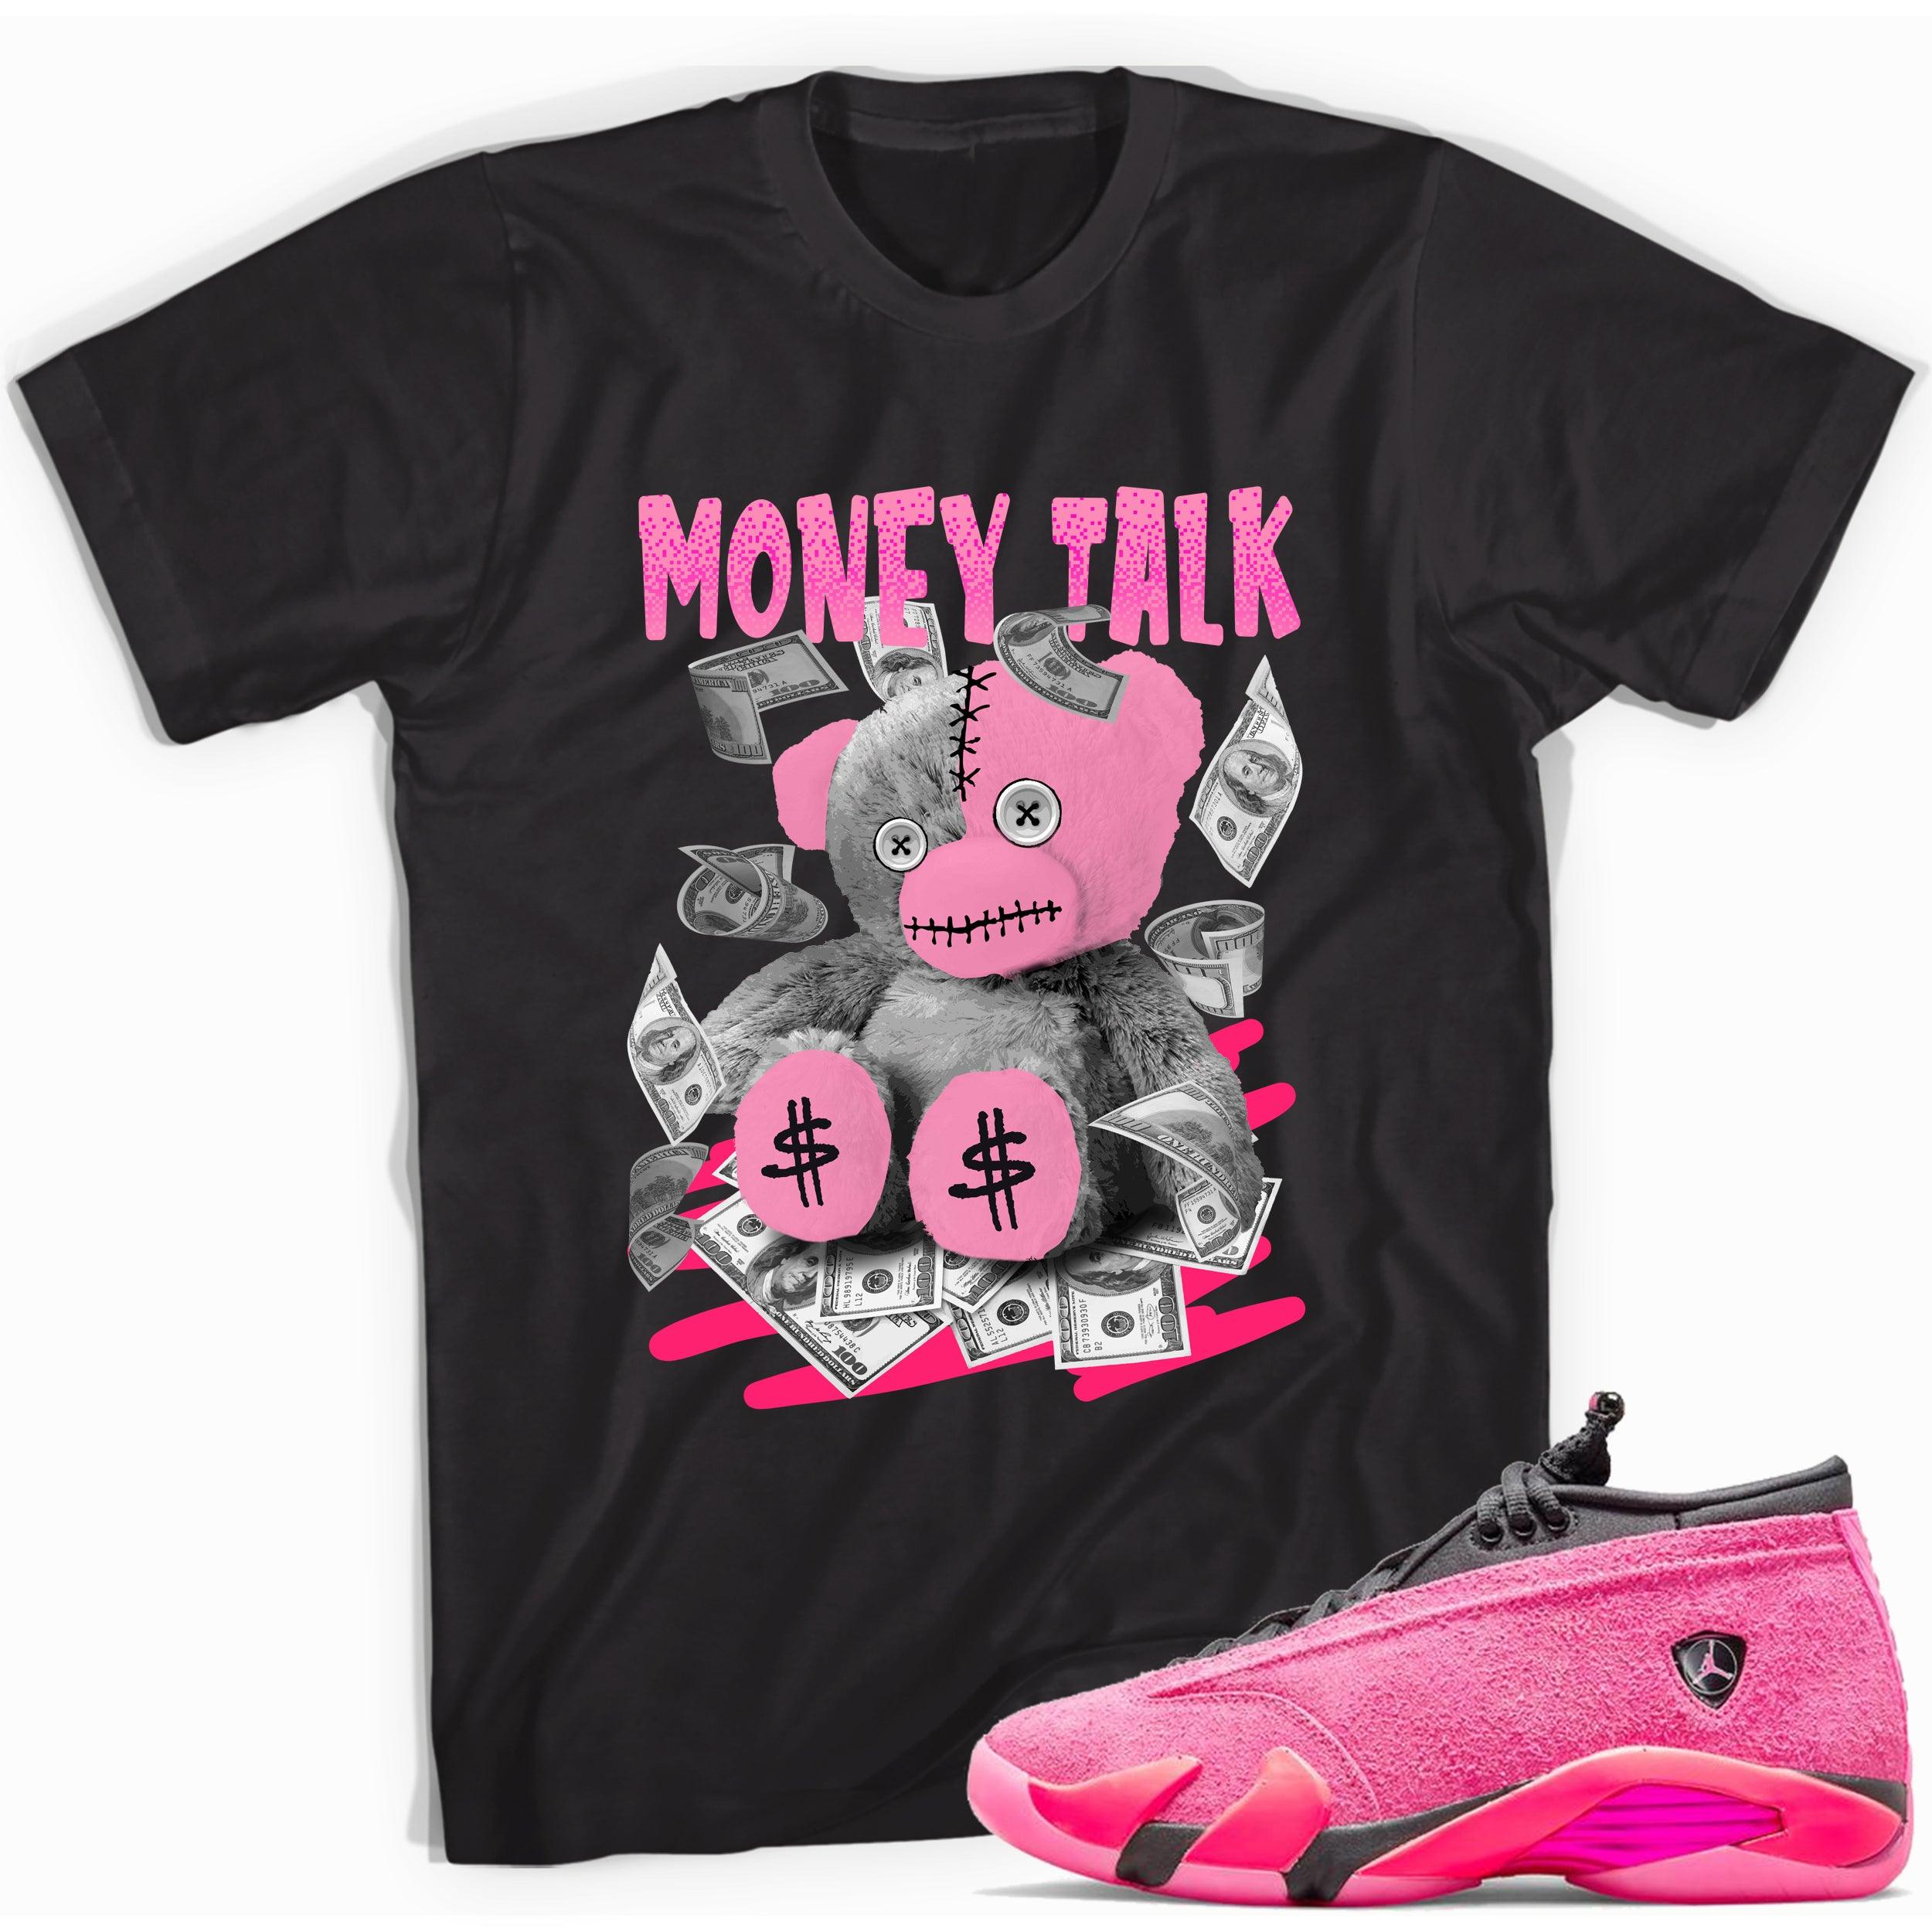 Black Money Talk Shirt Jordan 14s Low Shocking Pink photo